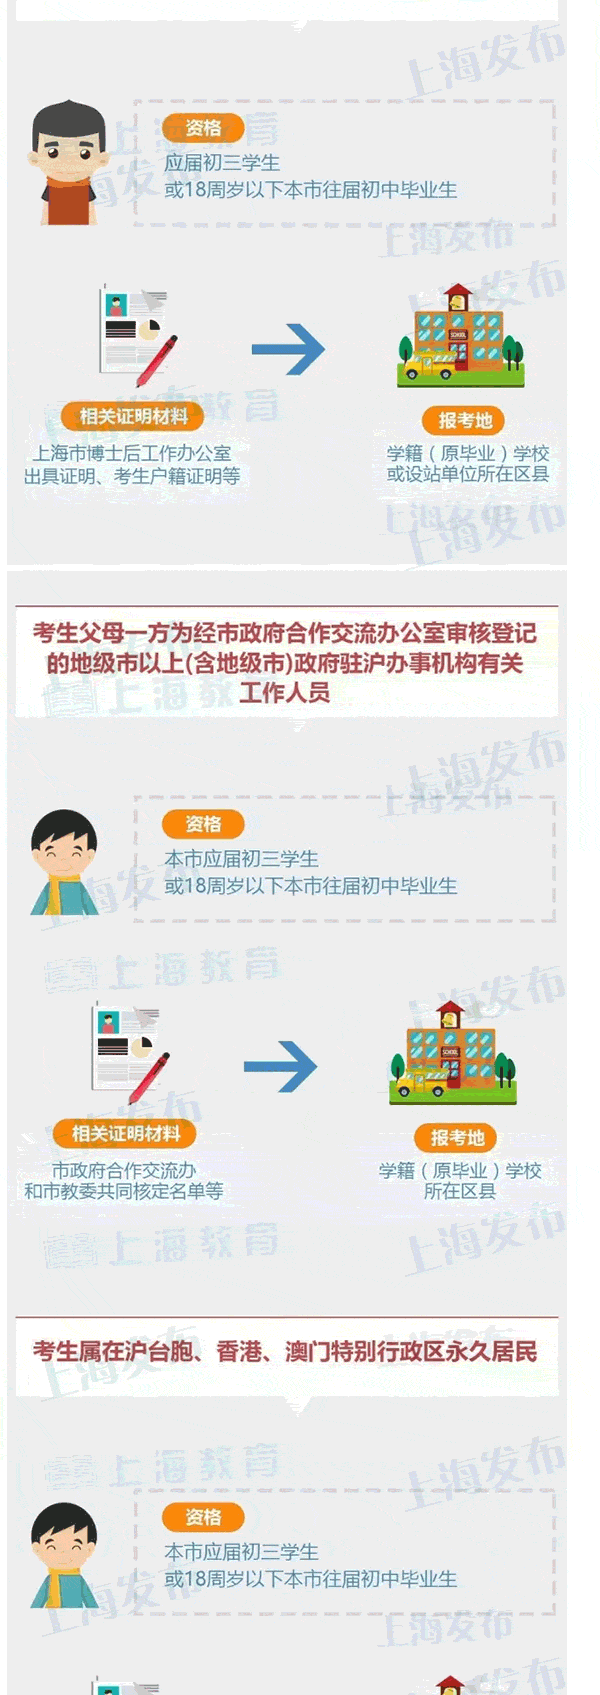 2017上海中考12月22日起报名 报名政策公布3